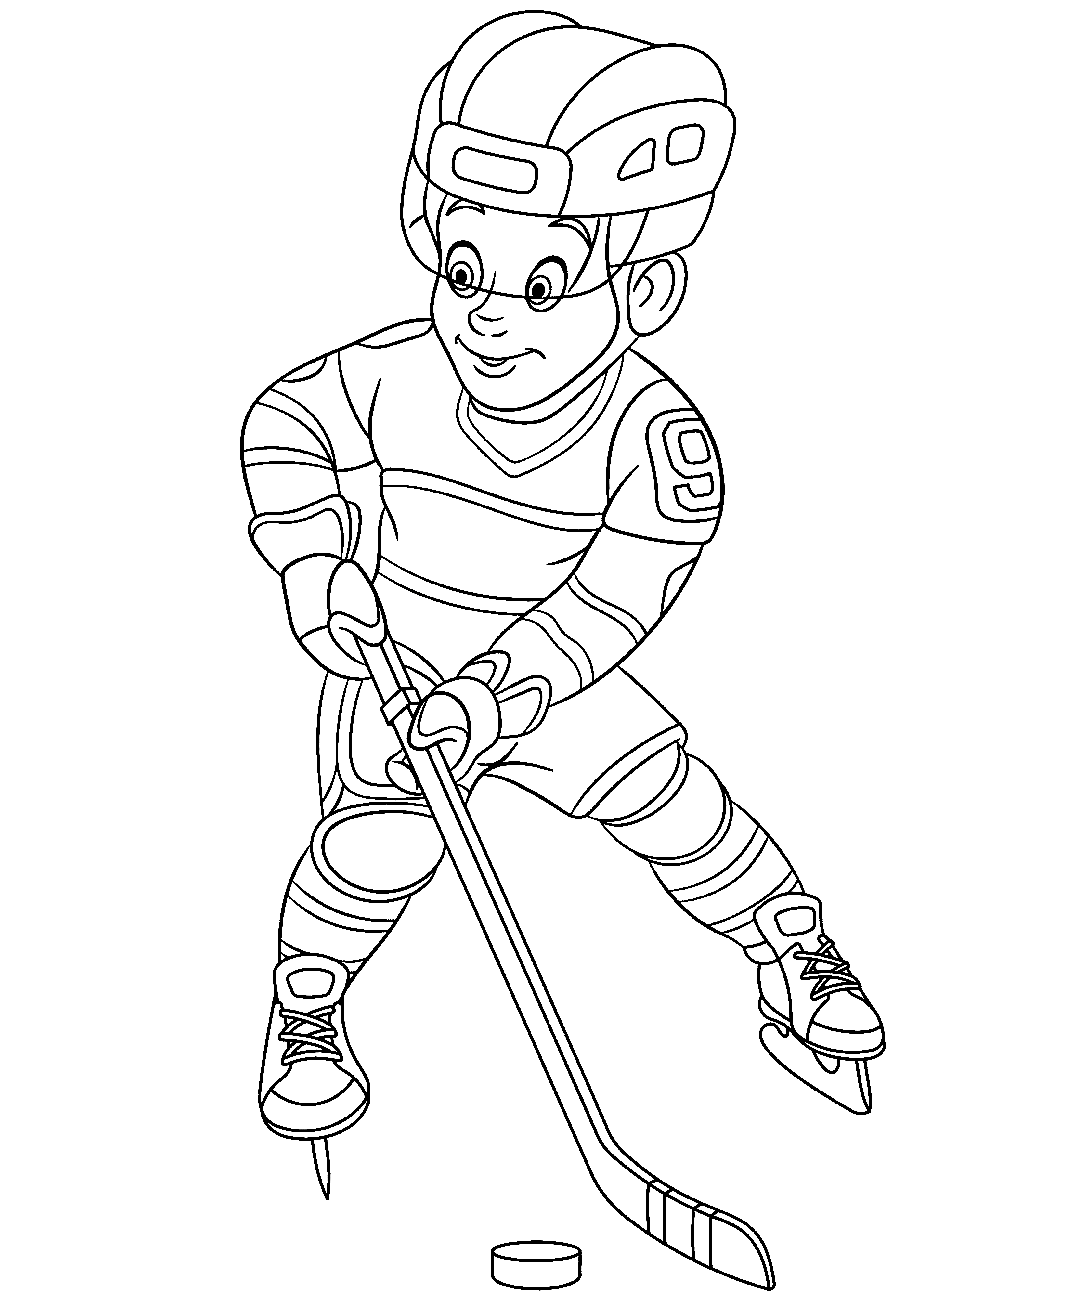 Мальчик играющий в хоккей раскраска